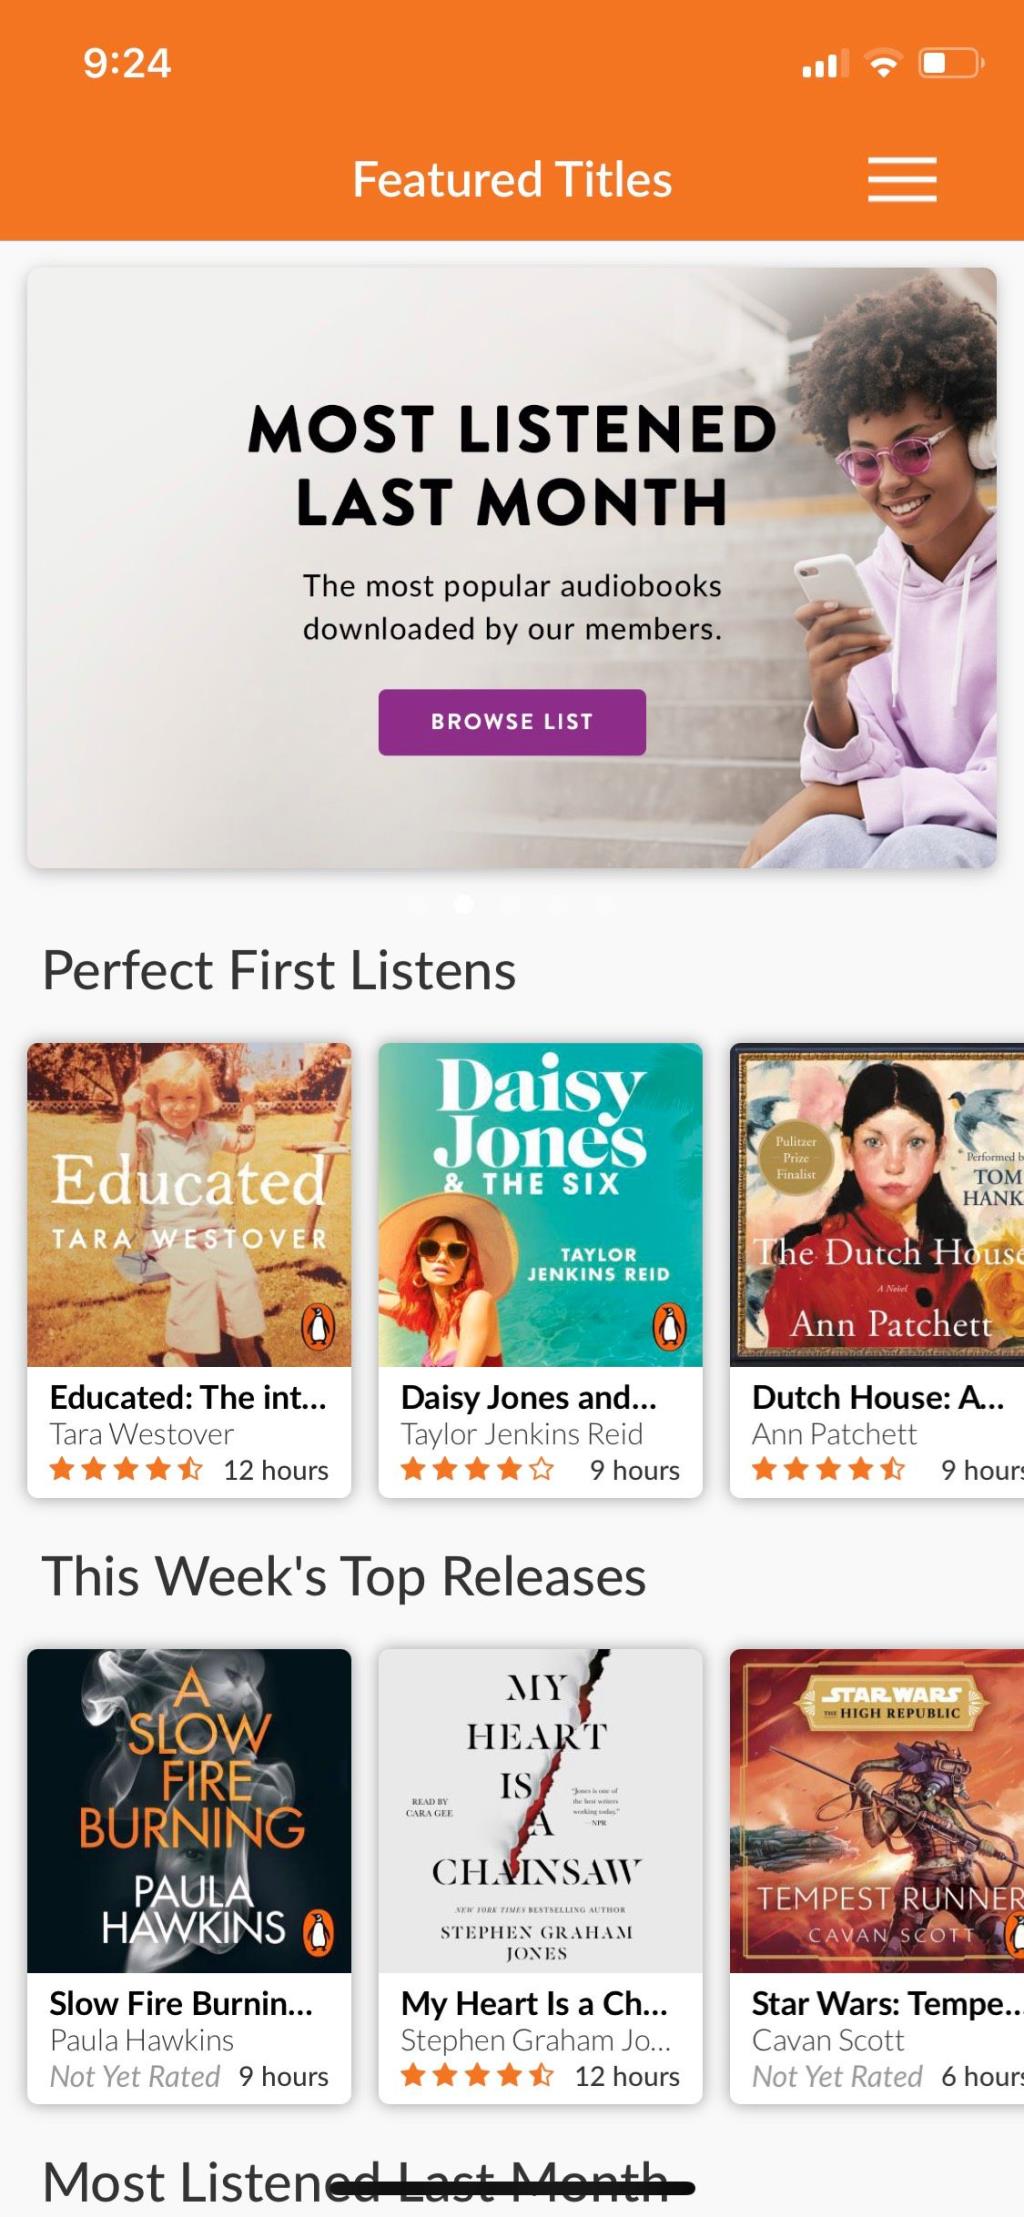 Os 6 melhores aplicativos de audiolivro para iPhone e iPad